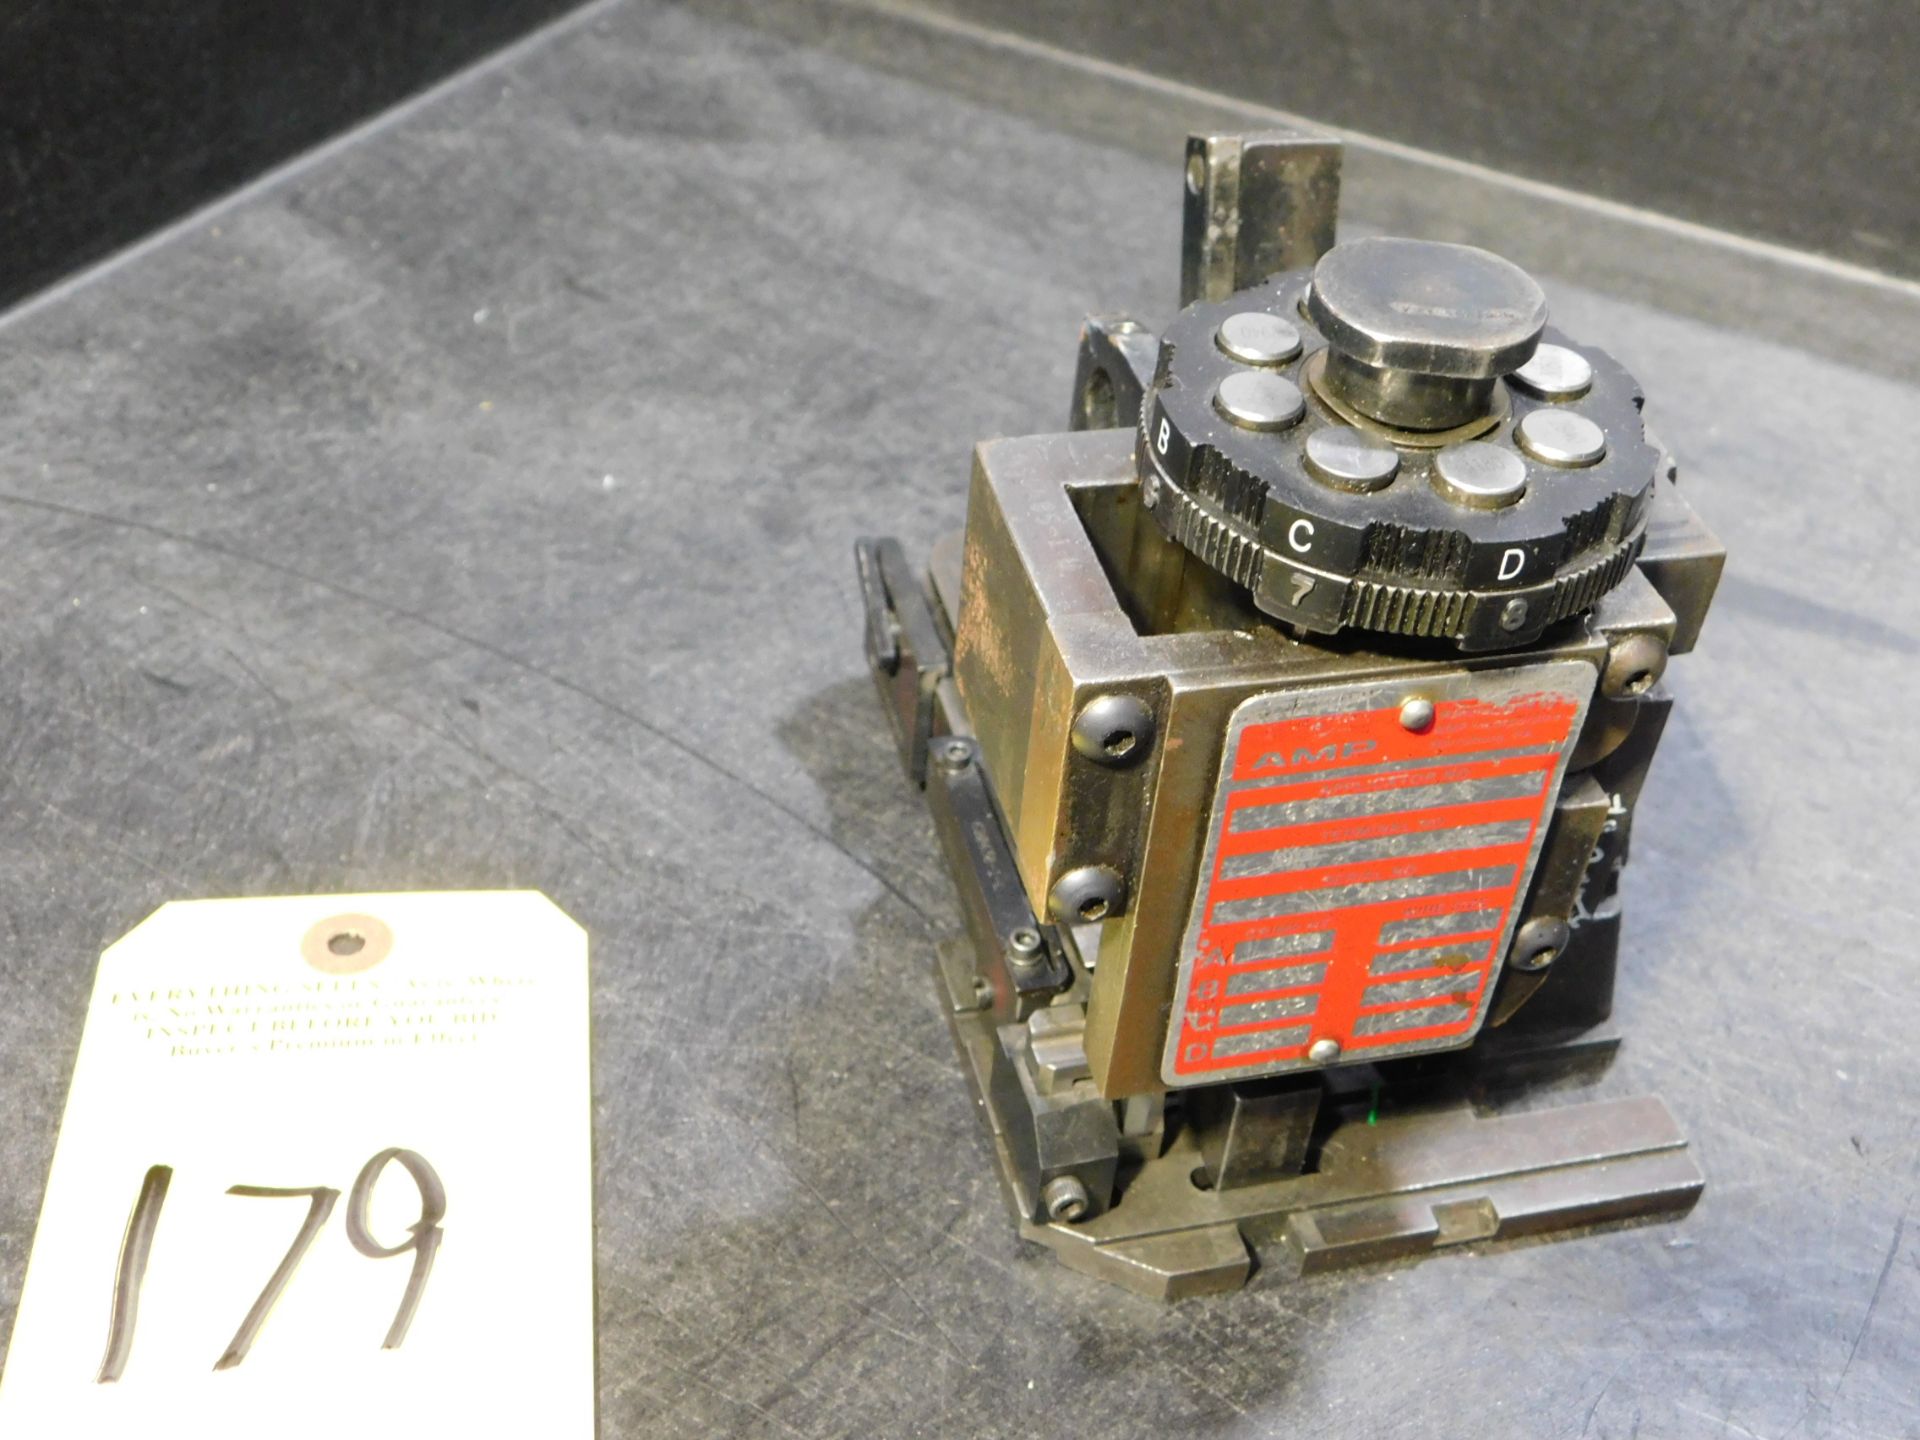 AMP Applicator, Model 687763-2, s/n 314330 (Needs Repair)